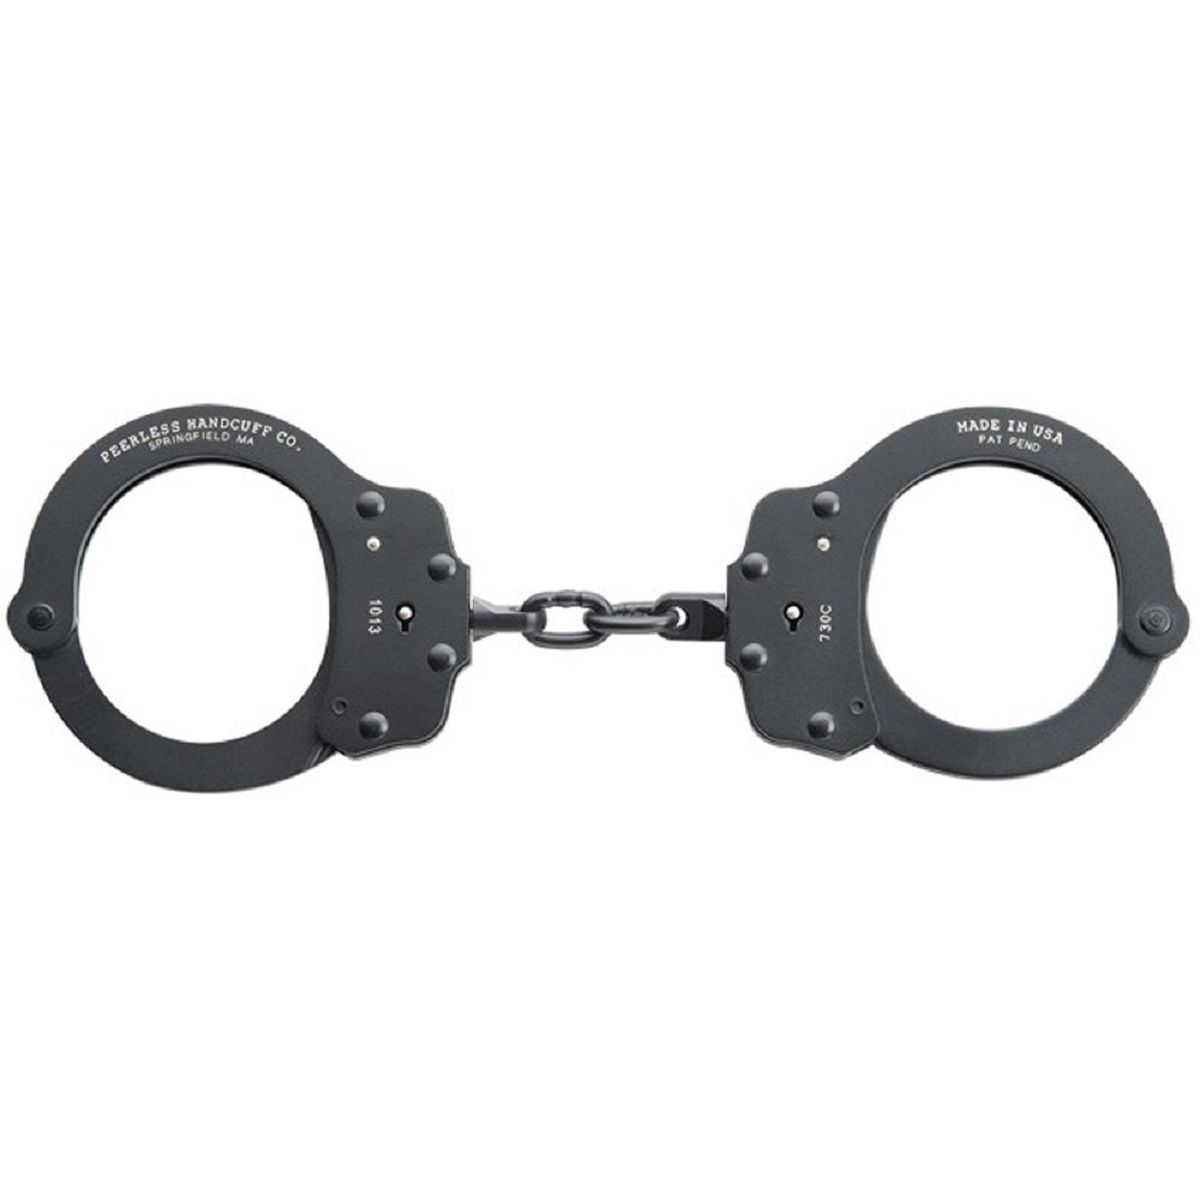 Peerless 730C Superlite Chain Link Handcuff